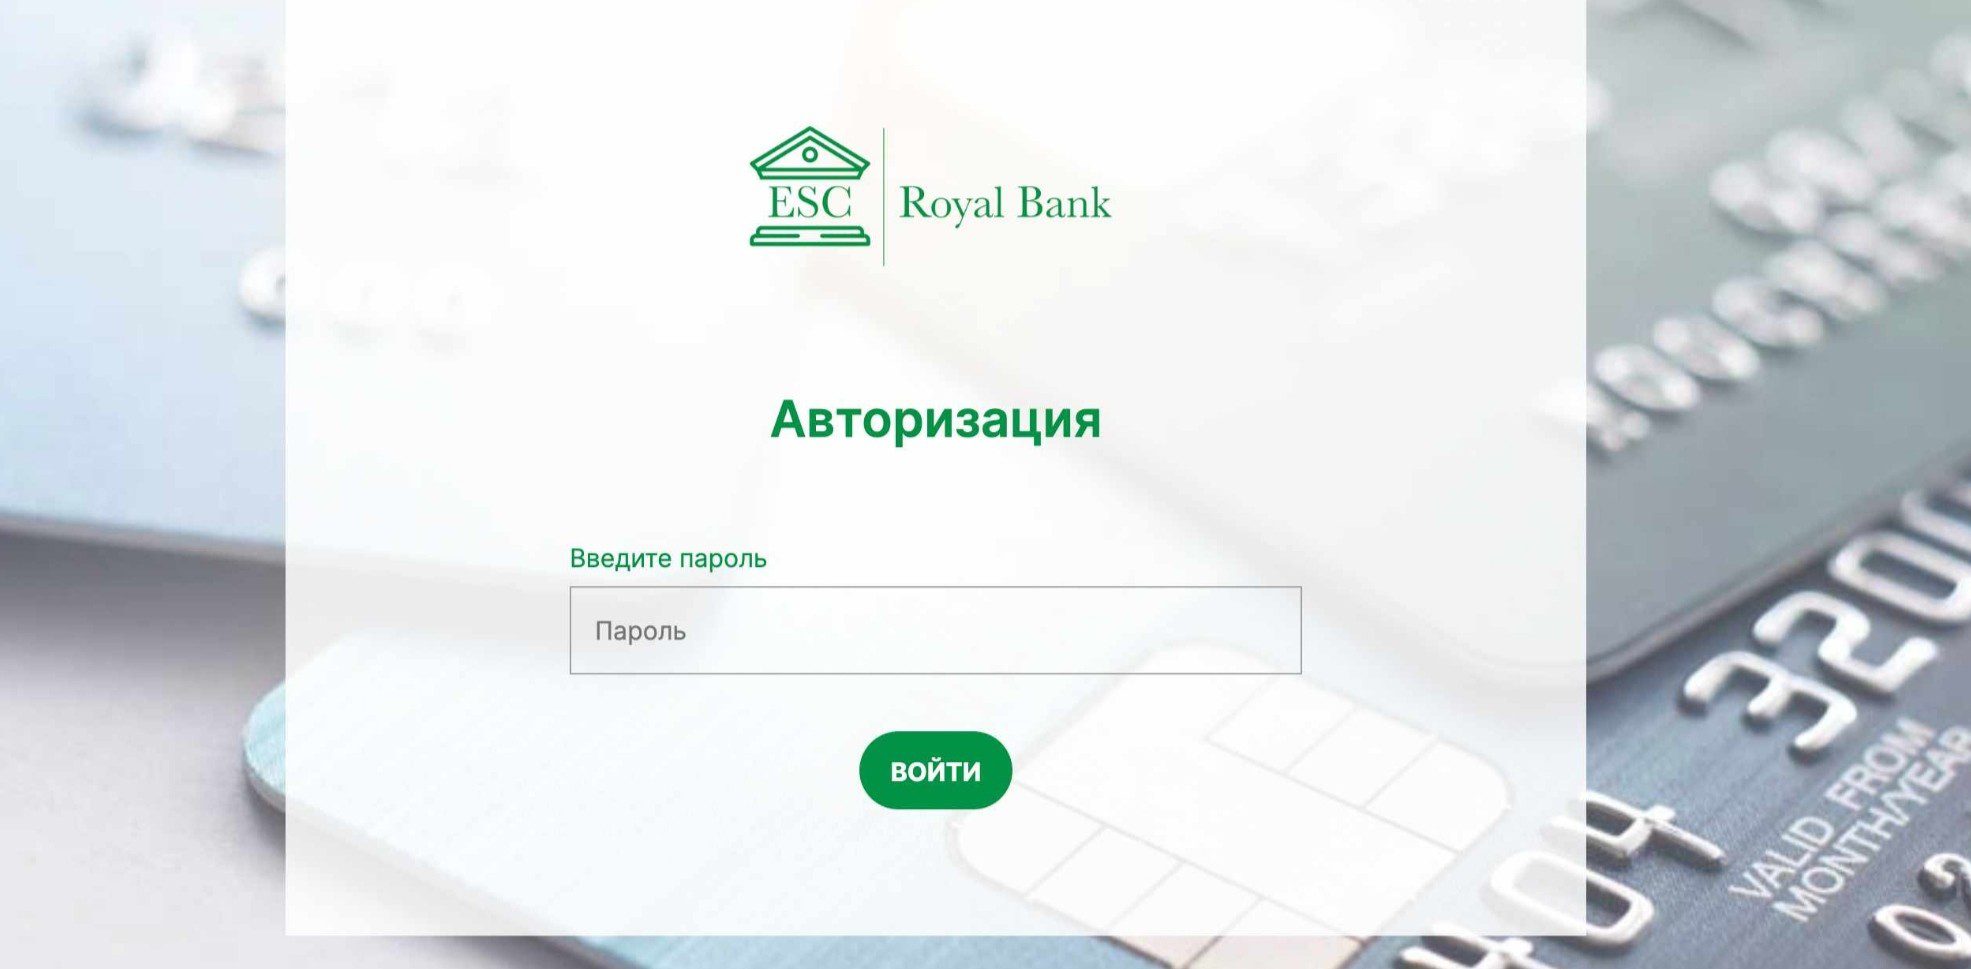 esc royal bank отзывы